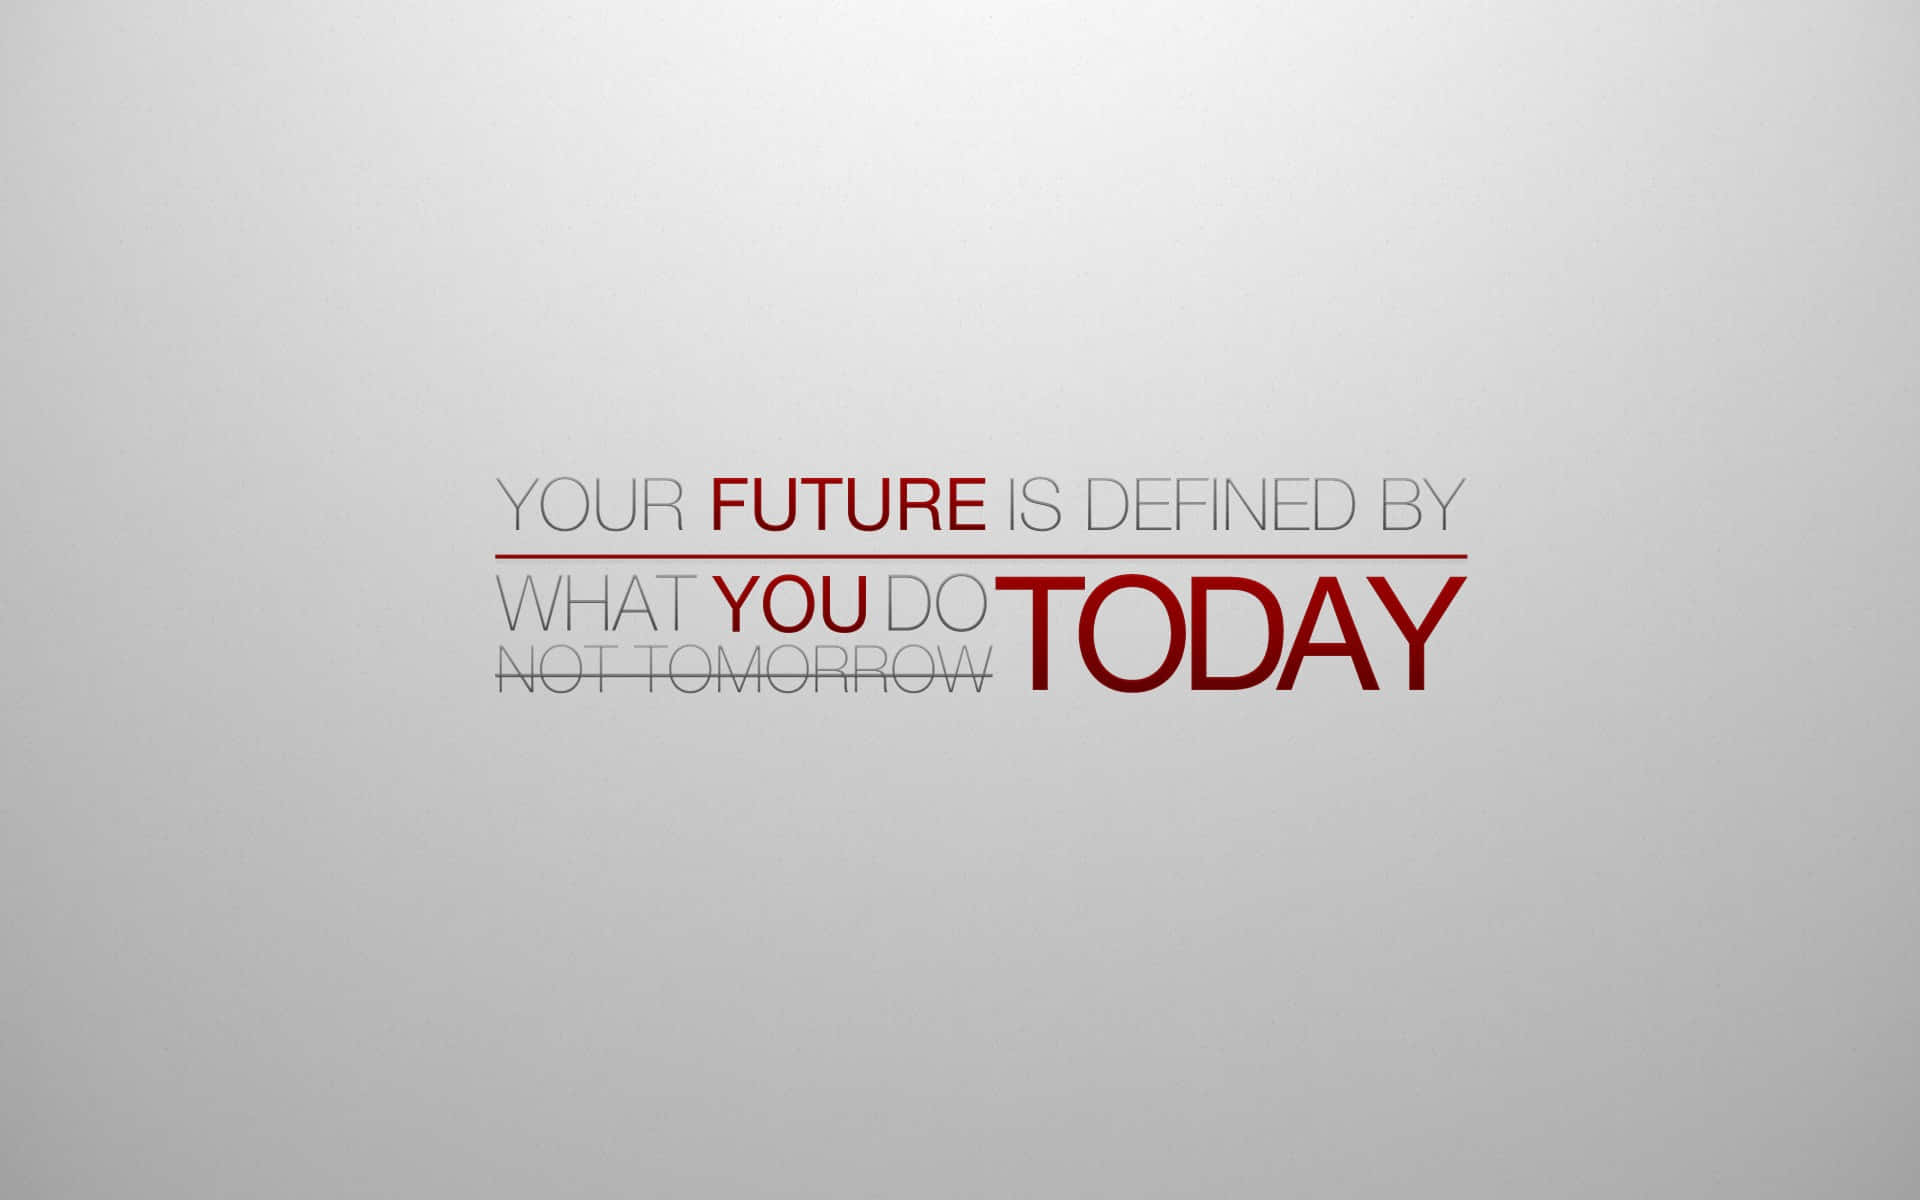 Din fremtid bestemmes af, hvad du gør i dag. Wallpaper